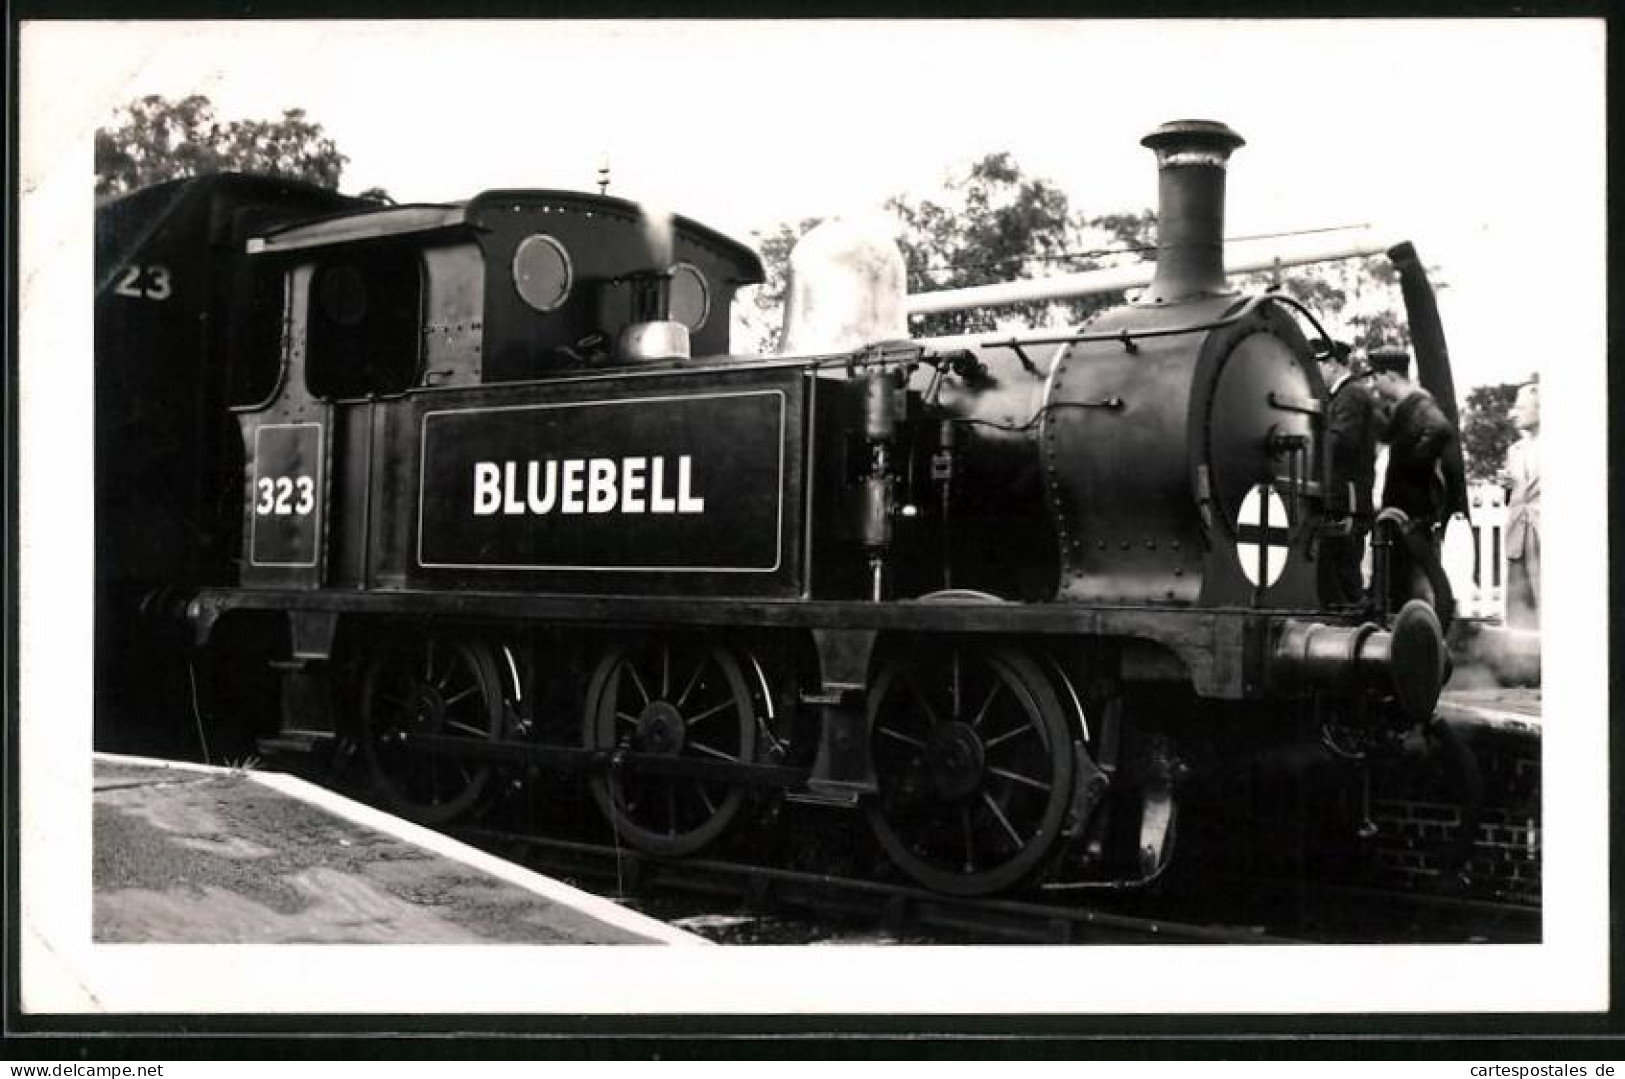 Fotografie Britische Eisenbahn, Dampflok, Lokomotive Bluebell Nr. 323  - Eisenbahnen